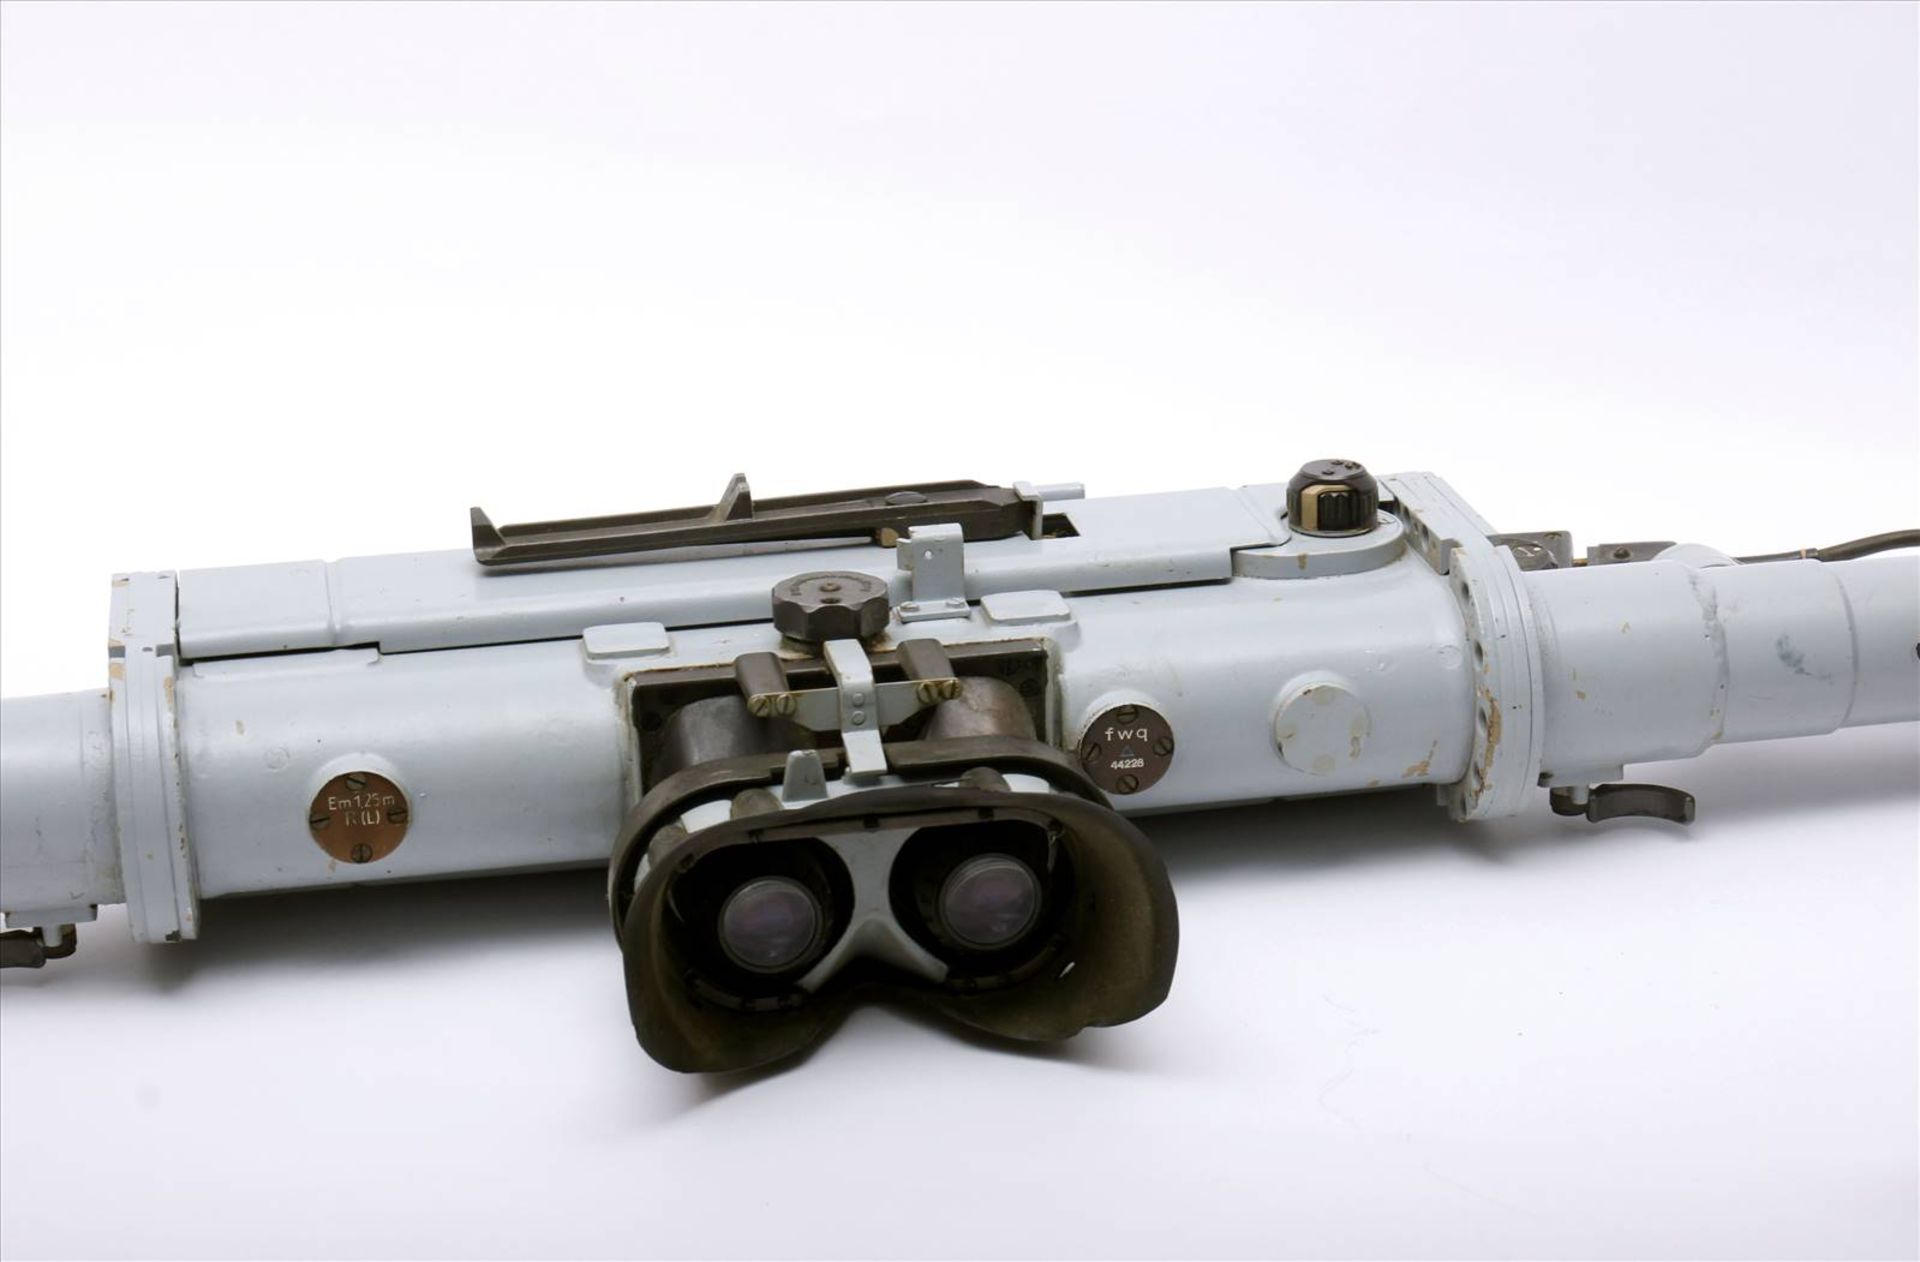 Entfernungsmesser WehrmachtEntfernungsmesser mit allen Teilen. Maße 1420 mm x 320 mm.